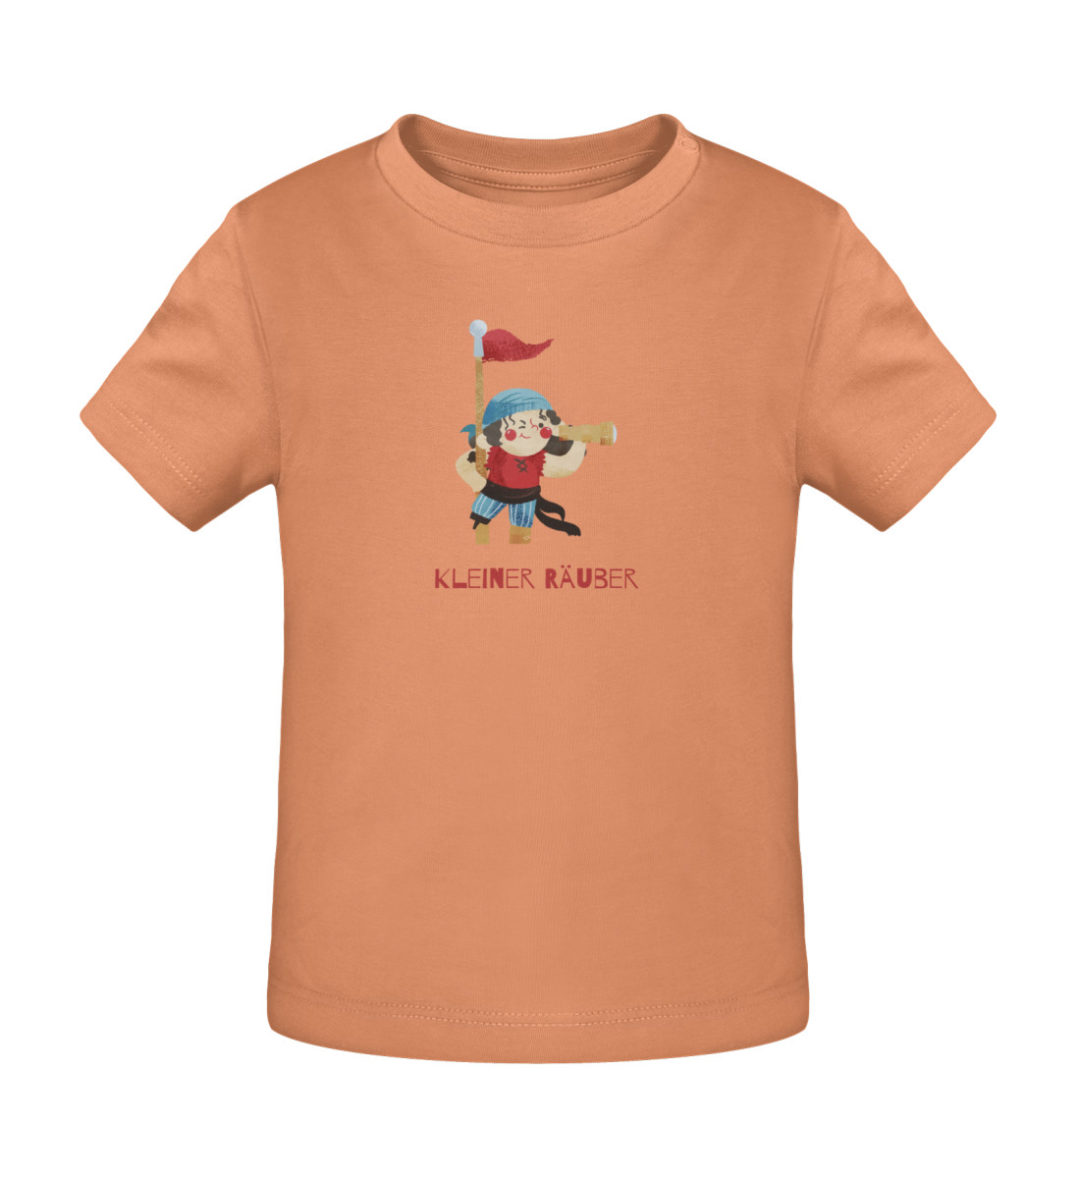 Kleiner Räuber - Baby Creator T-Shirt ST/ST-7101